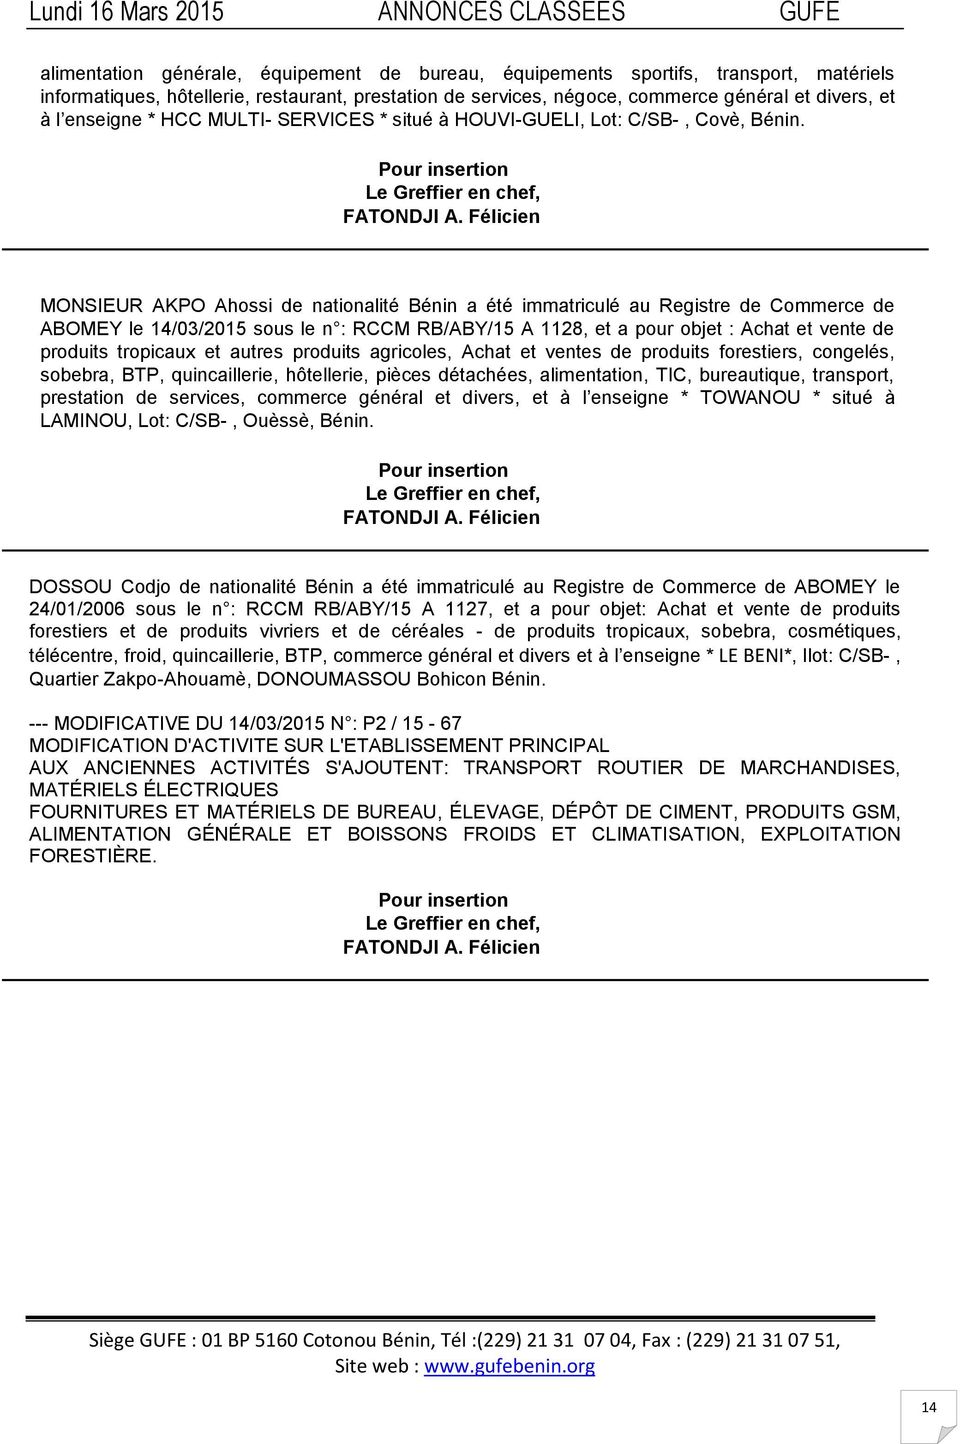 Félicien MONSIEUR AKPO Ahossi de nationalité Bénin a été immatriculé au Registre de Commerce de ABOMEY le 14/03/2015 sous le n : RCCM RB/ABY/15 A 1128, et a pour objet : Achat et vente de produits